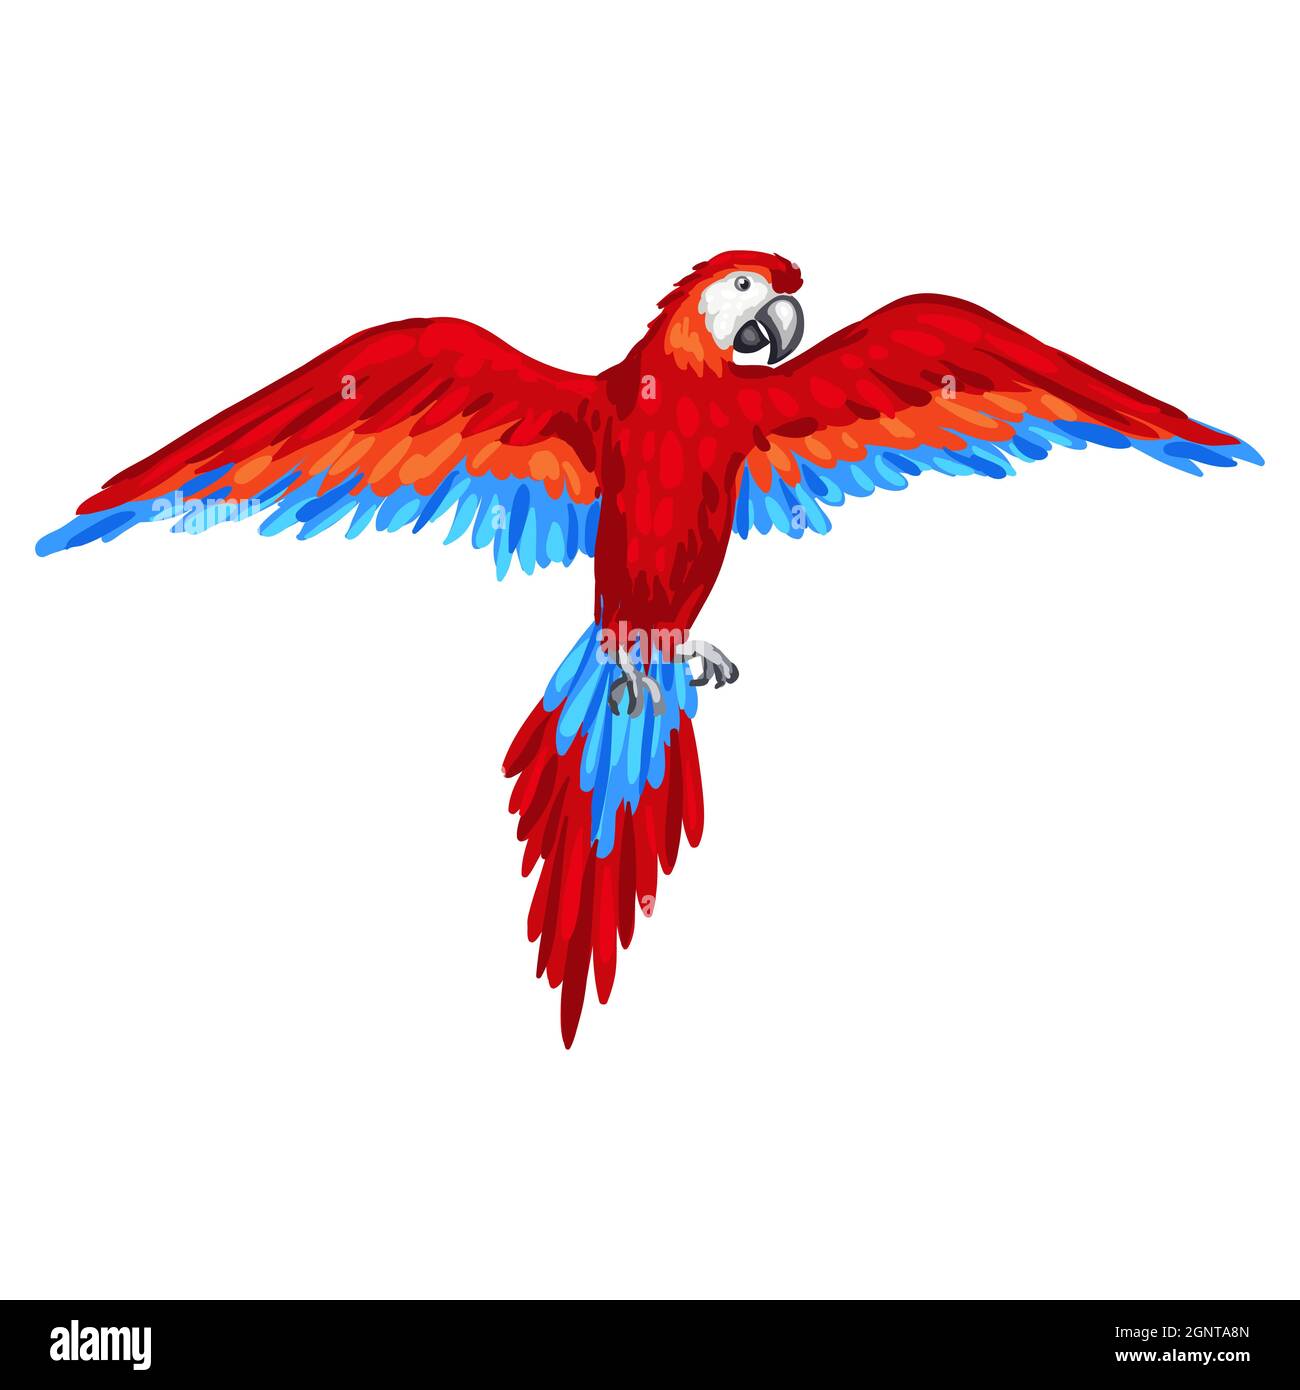 Illustrazione stilizzata del pappagallo. Immagine per design o decorazione. Illustrazione Vettoriale